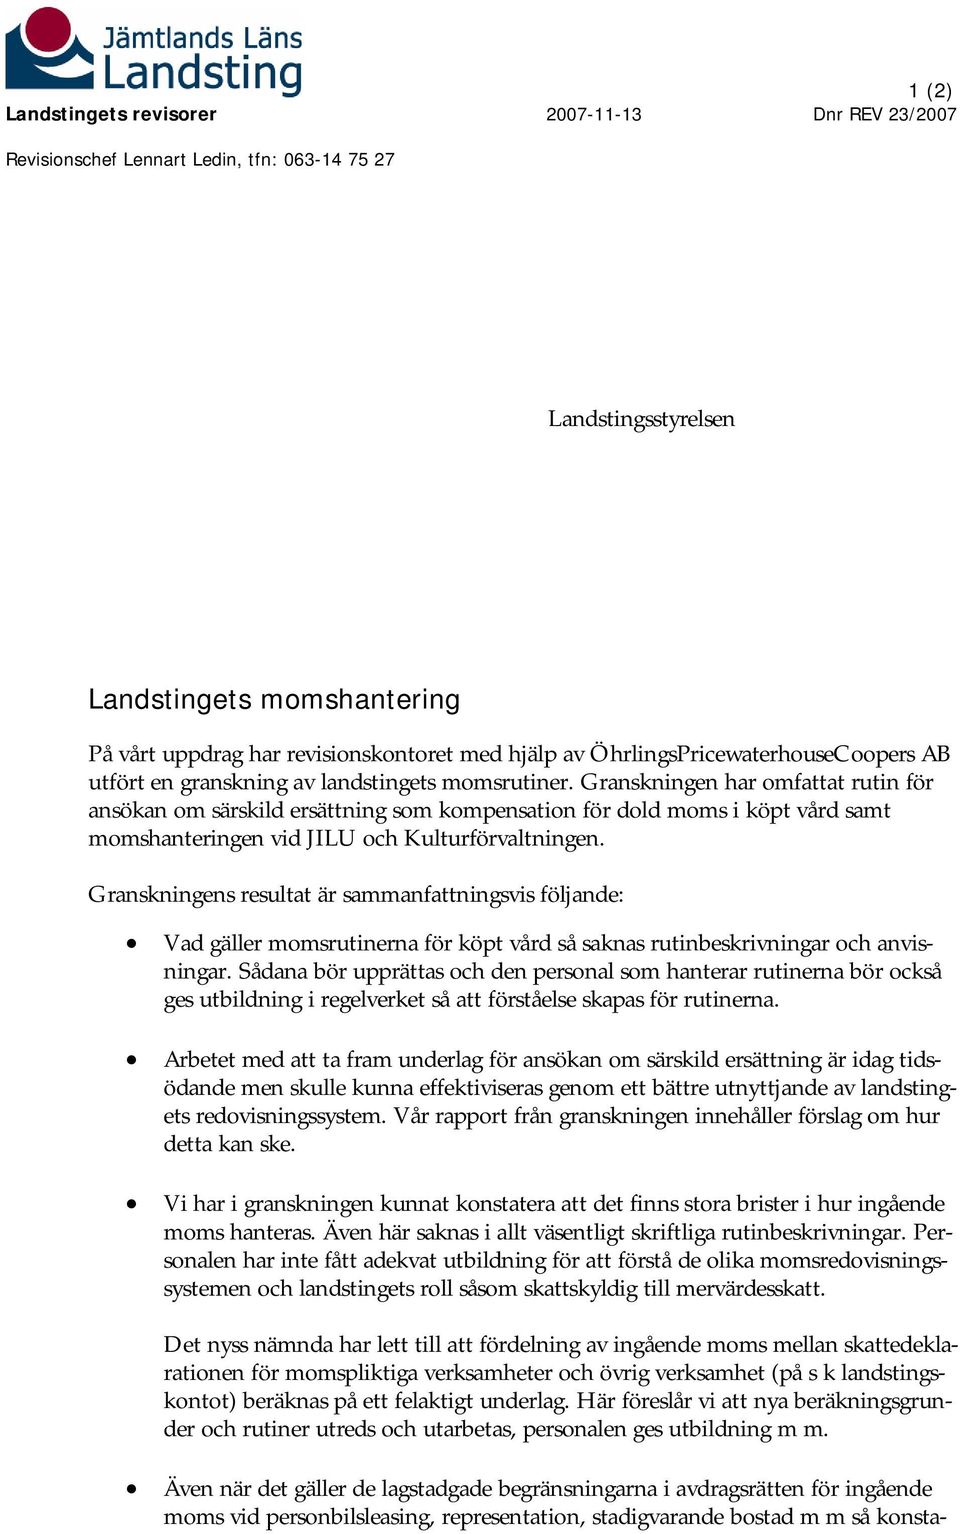 Landstingets momshantering - PDF Free Download